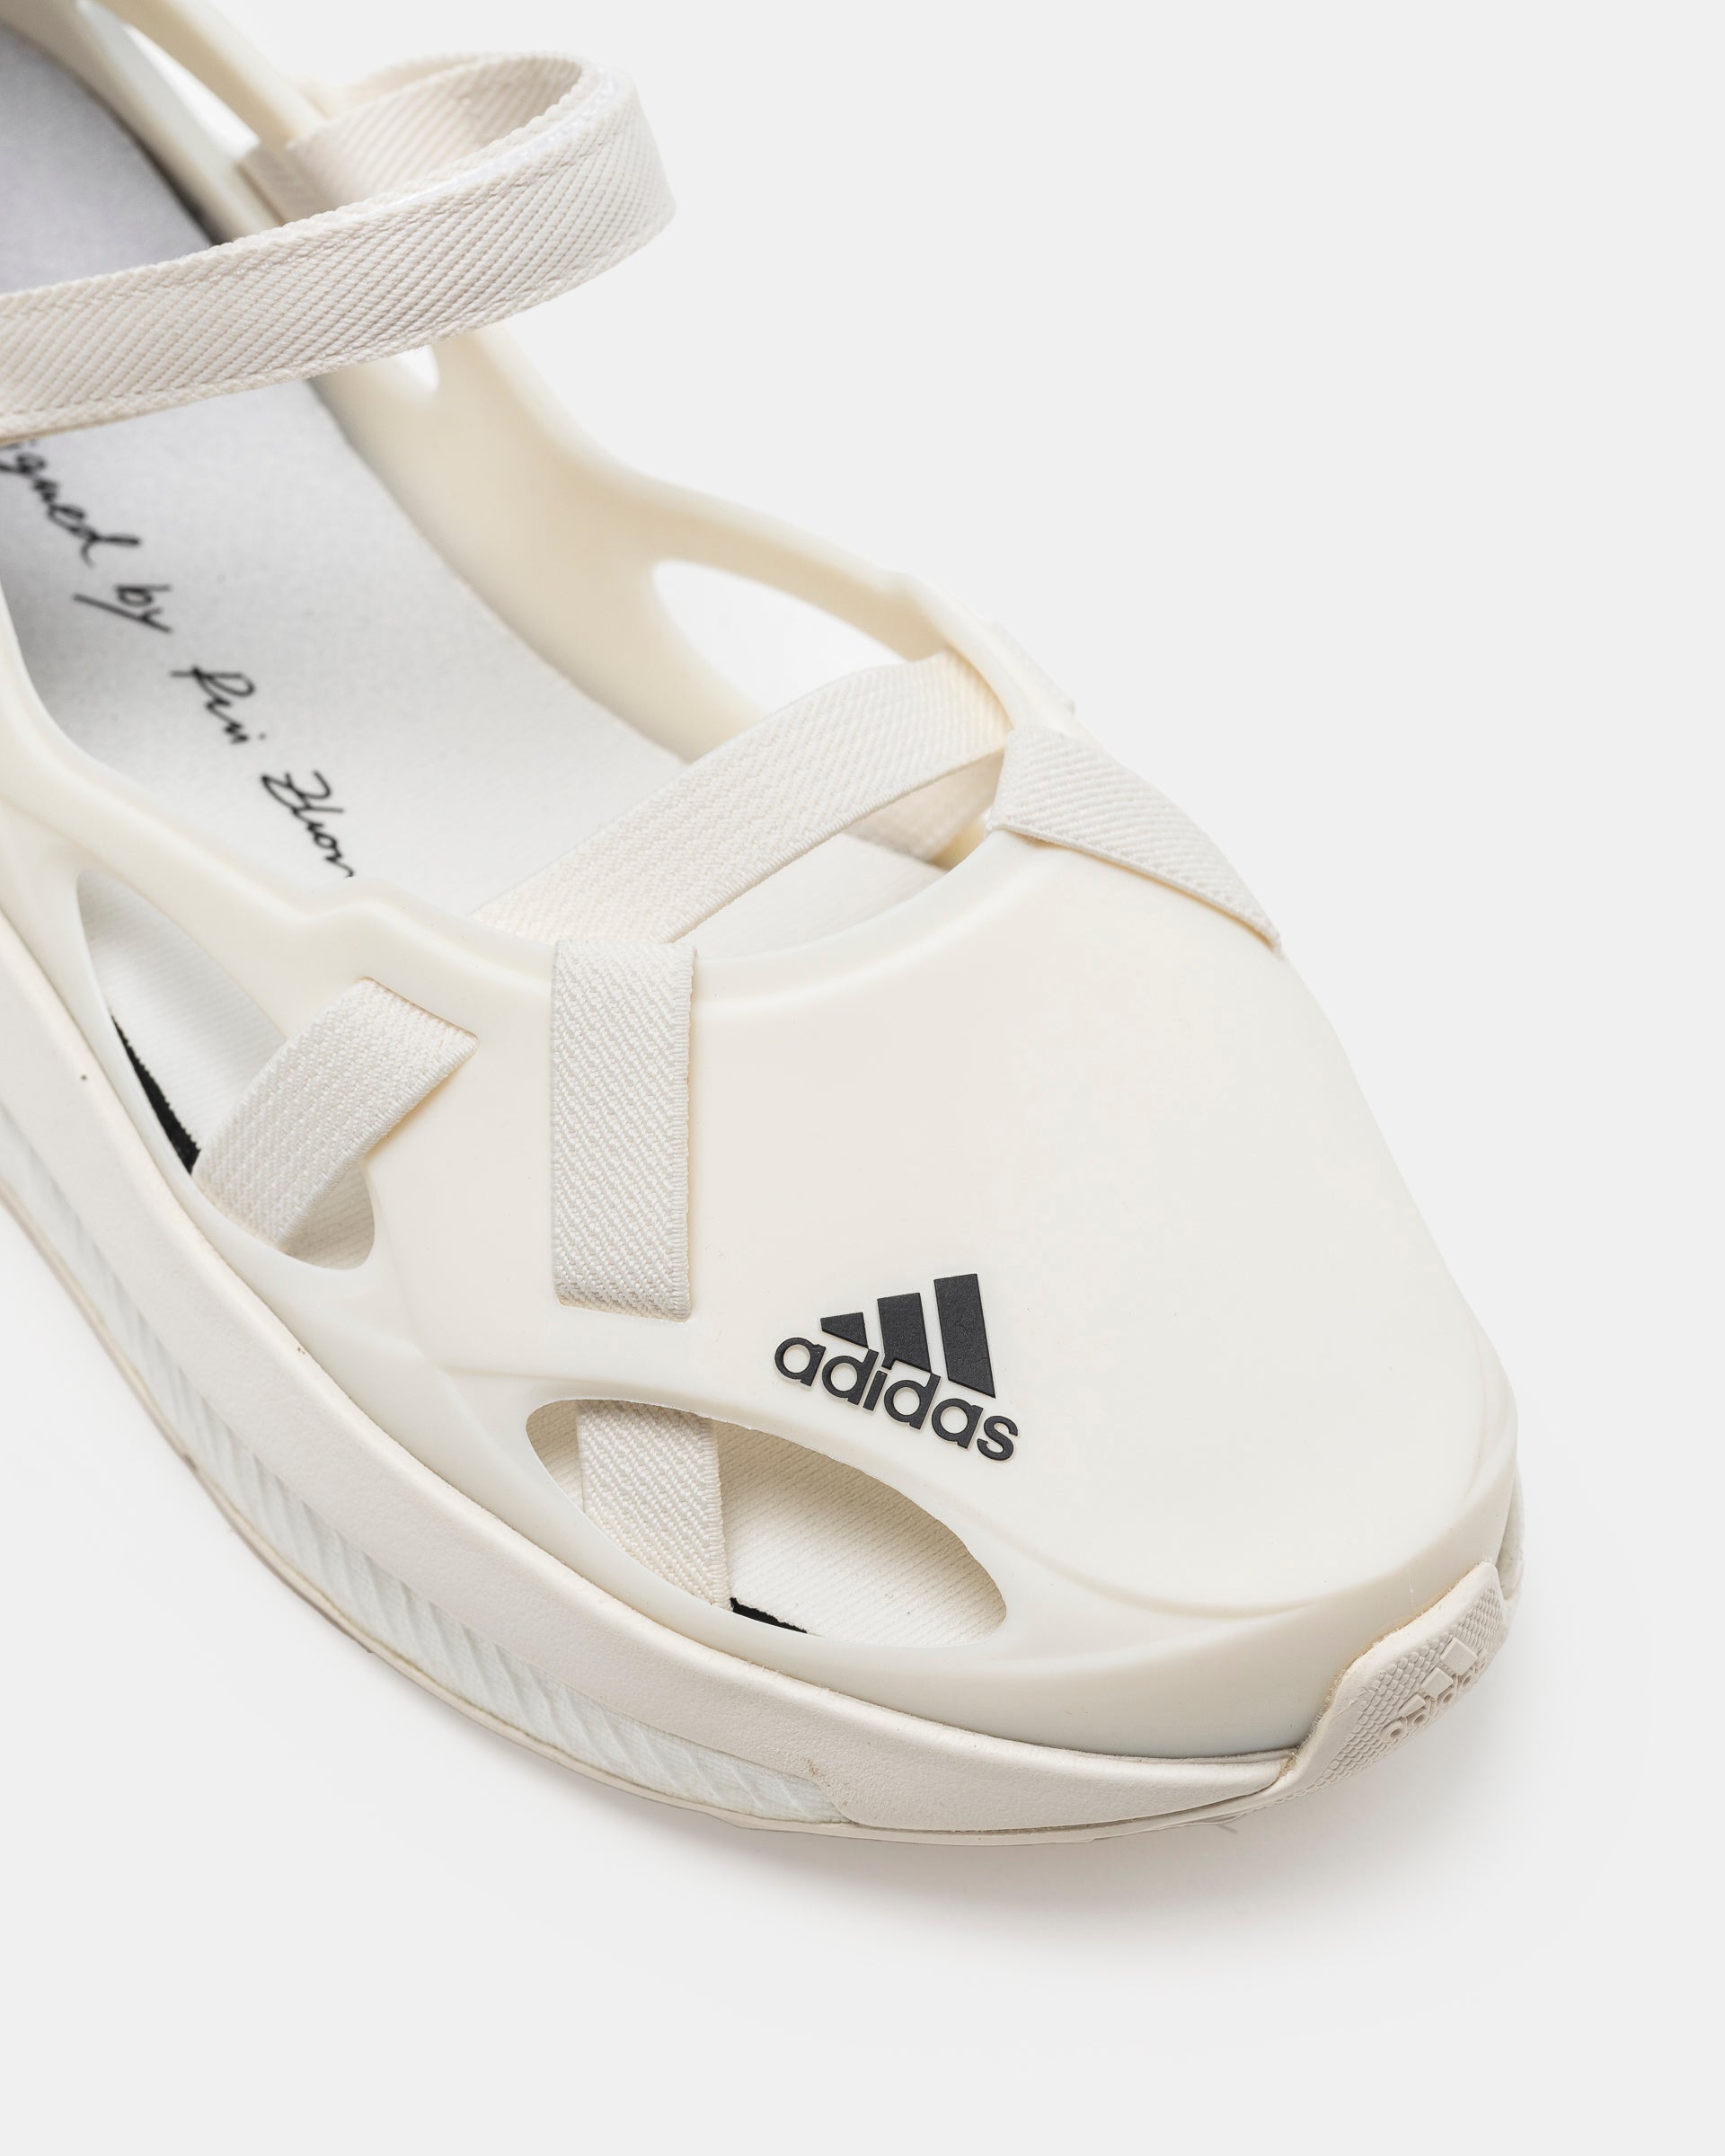 Rui x Adidas Ballet Shoe on white background